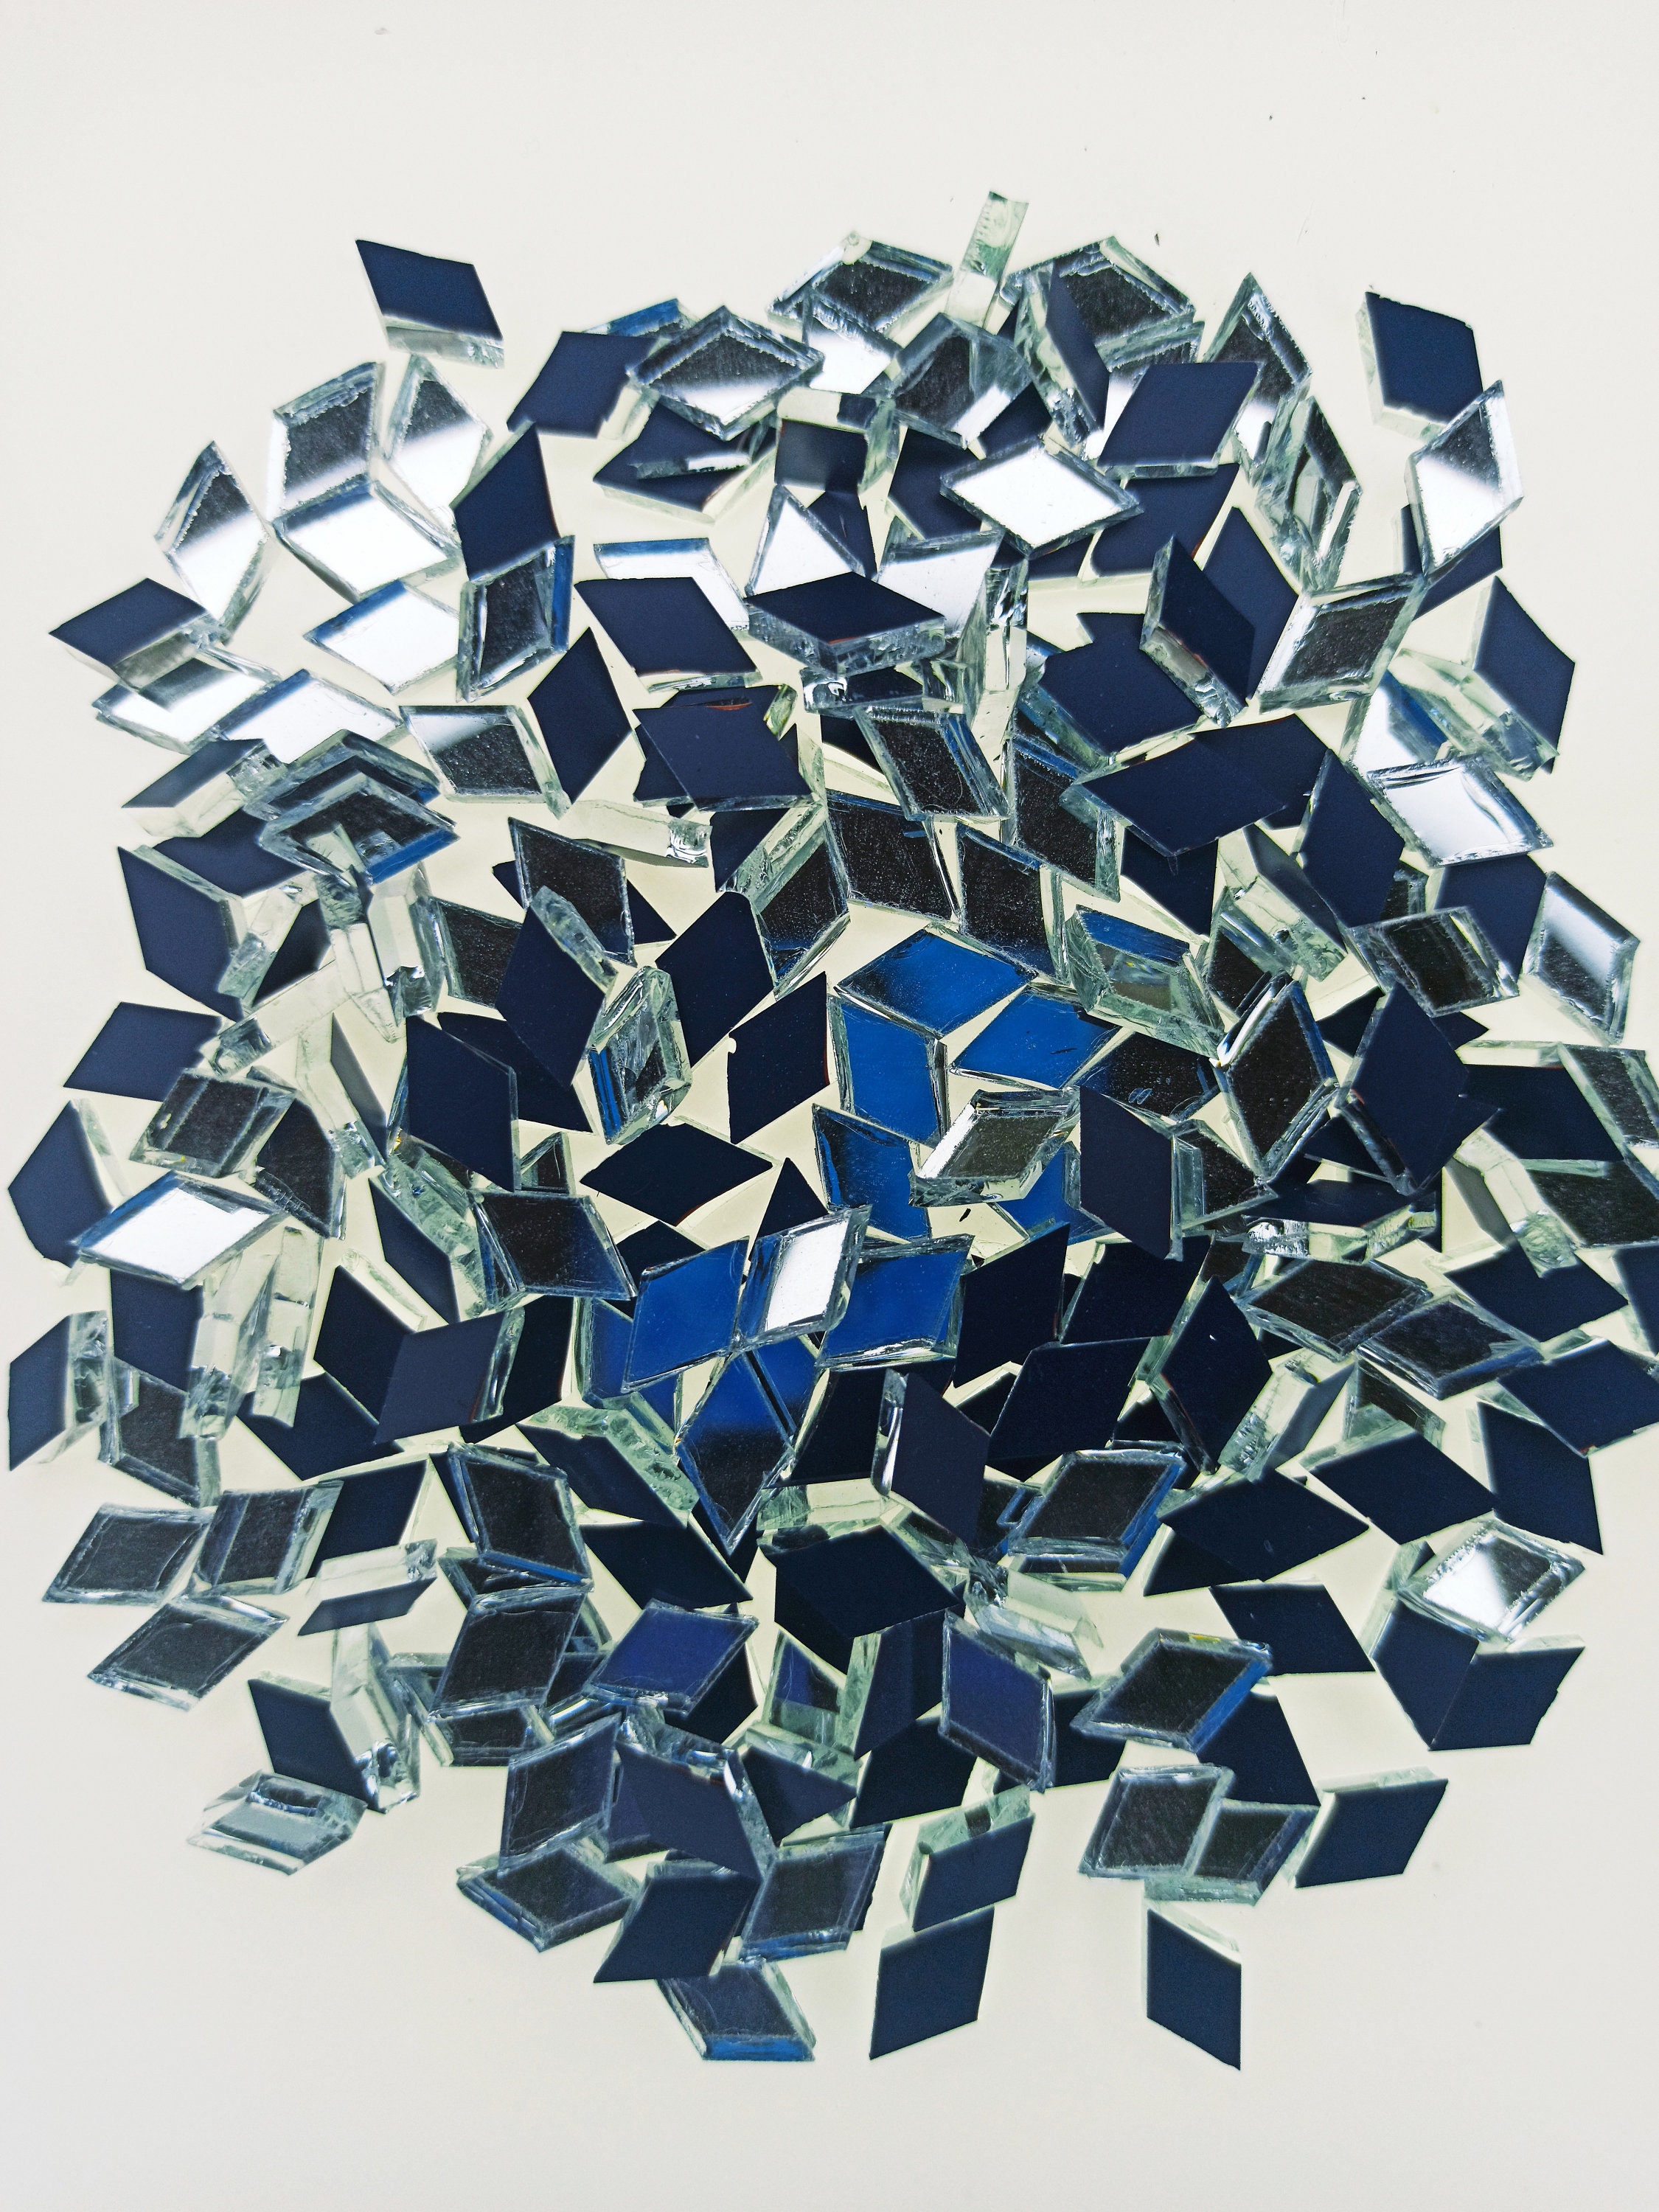 300pcs 1x1cm Mosaic Tiles Glass Mosaic Tiles for Crafts Bulk